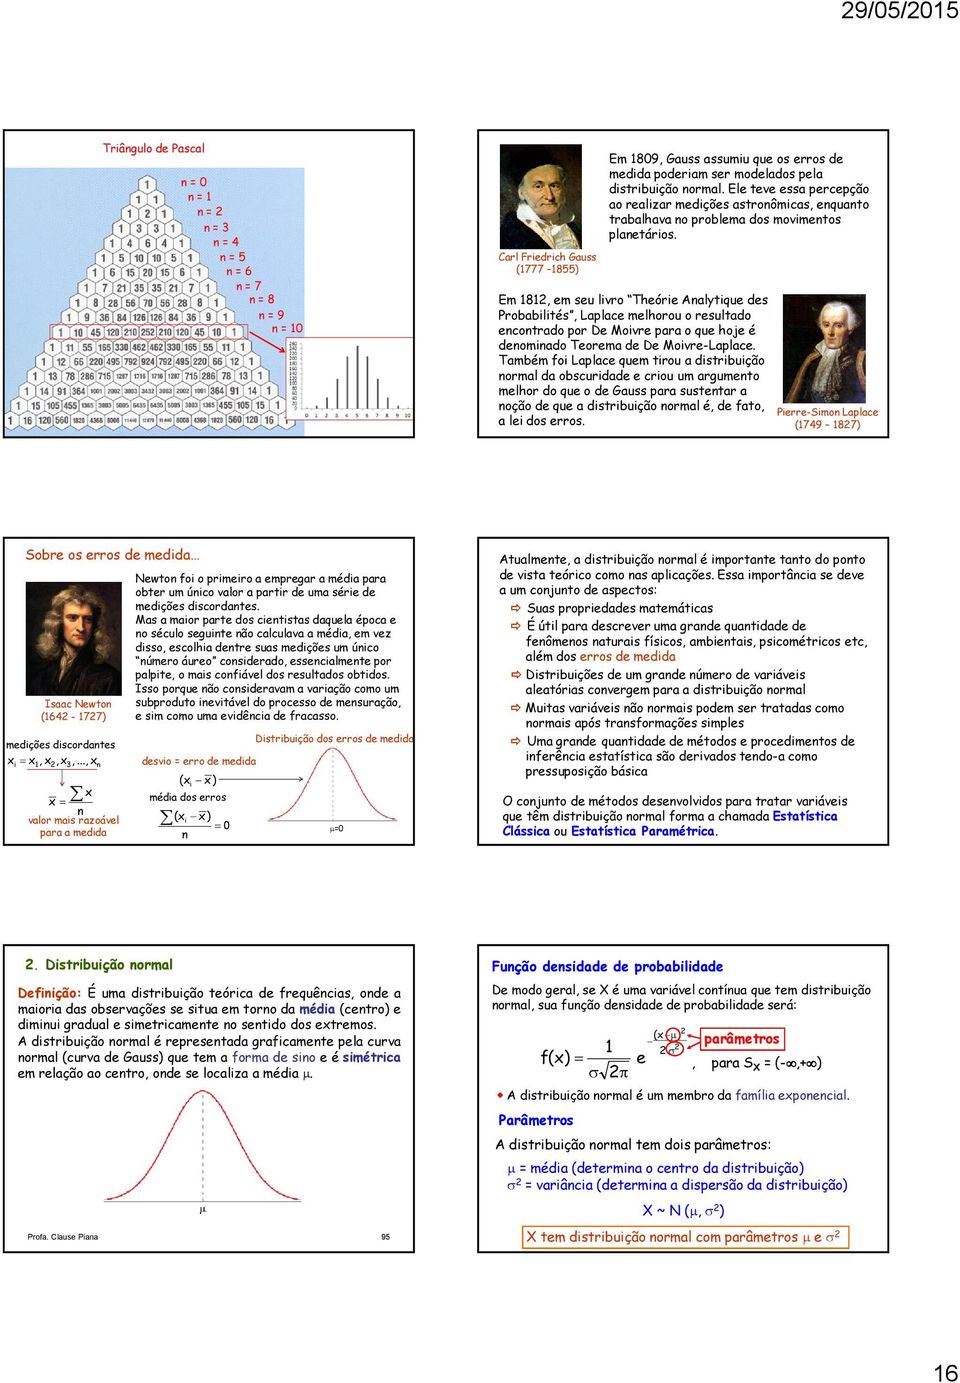 Em 8, em seu livro Theórie Aalytique des Probabilités, Laplace melhorou o resultado ecotrado por De Moivre para o que hoje é deomiado Teorema de De Moivre-Laplace.